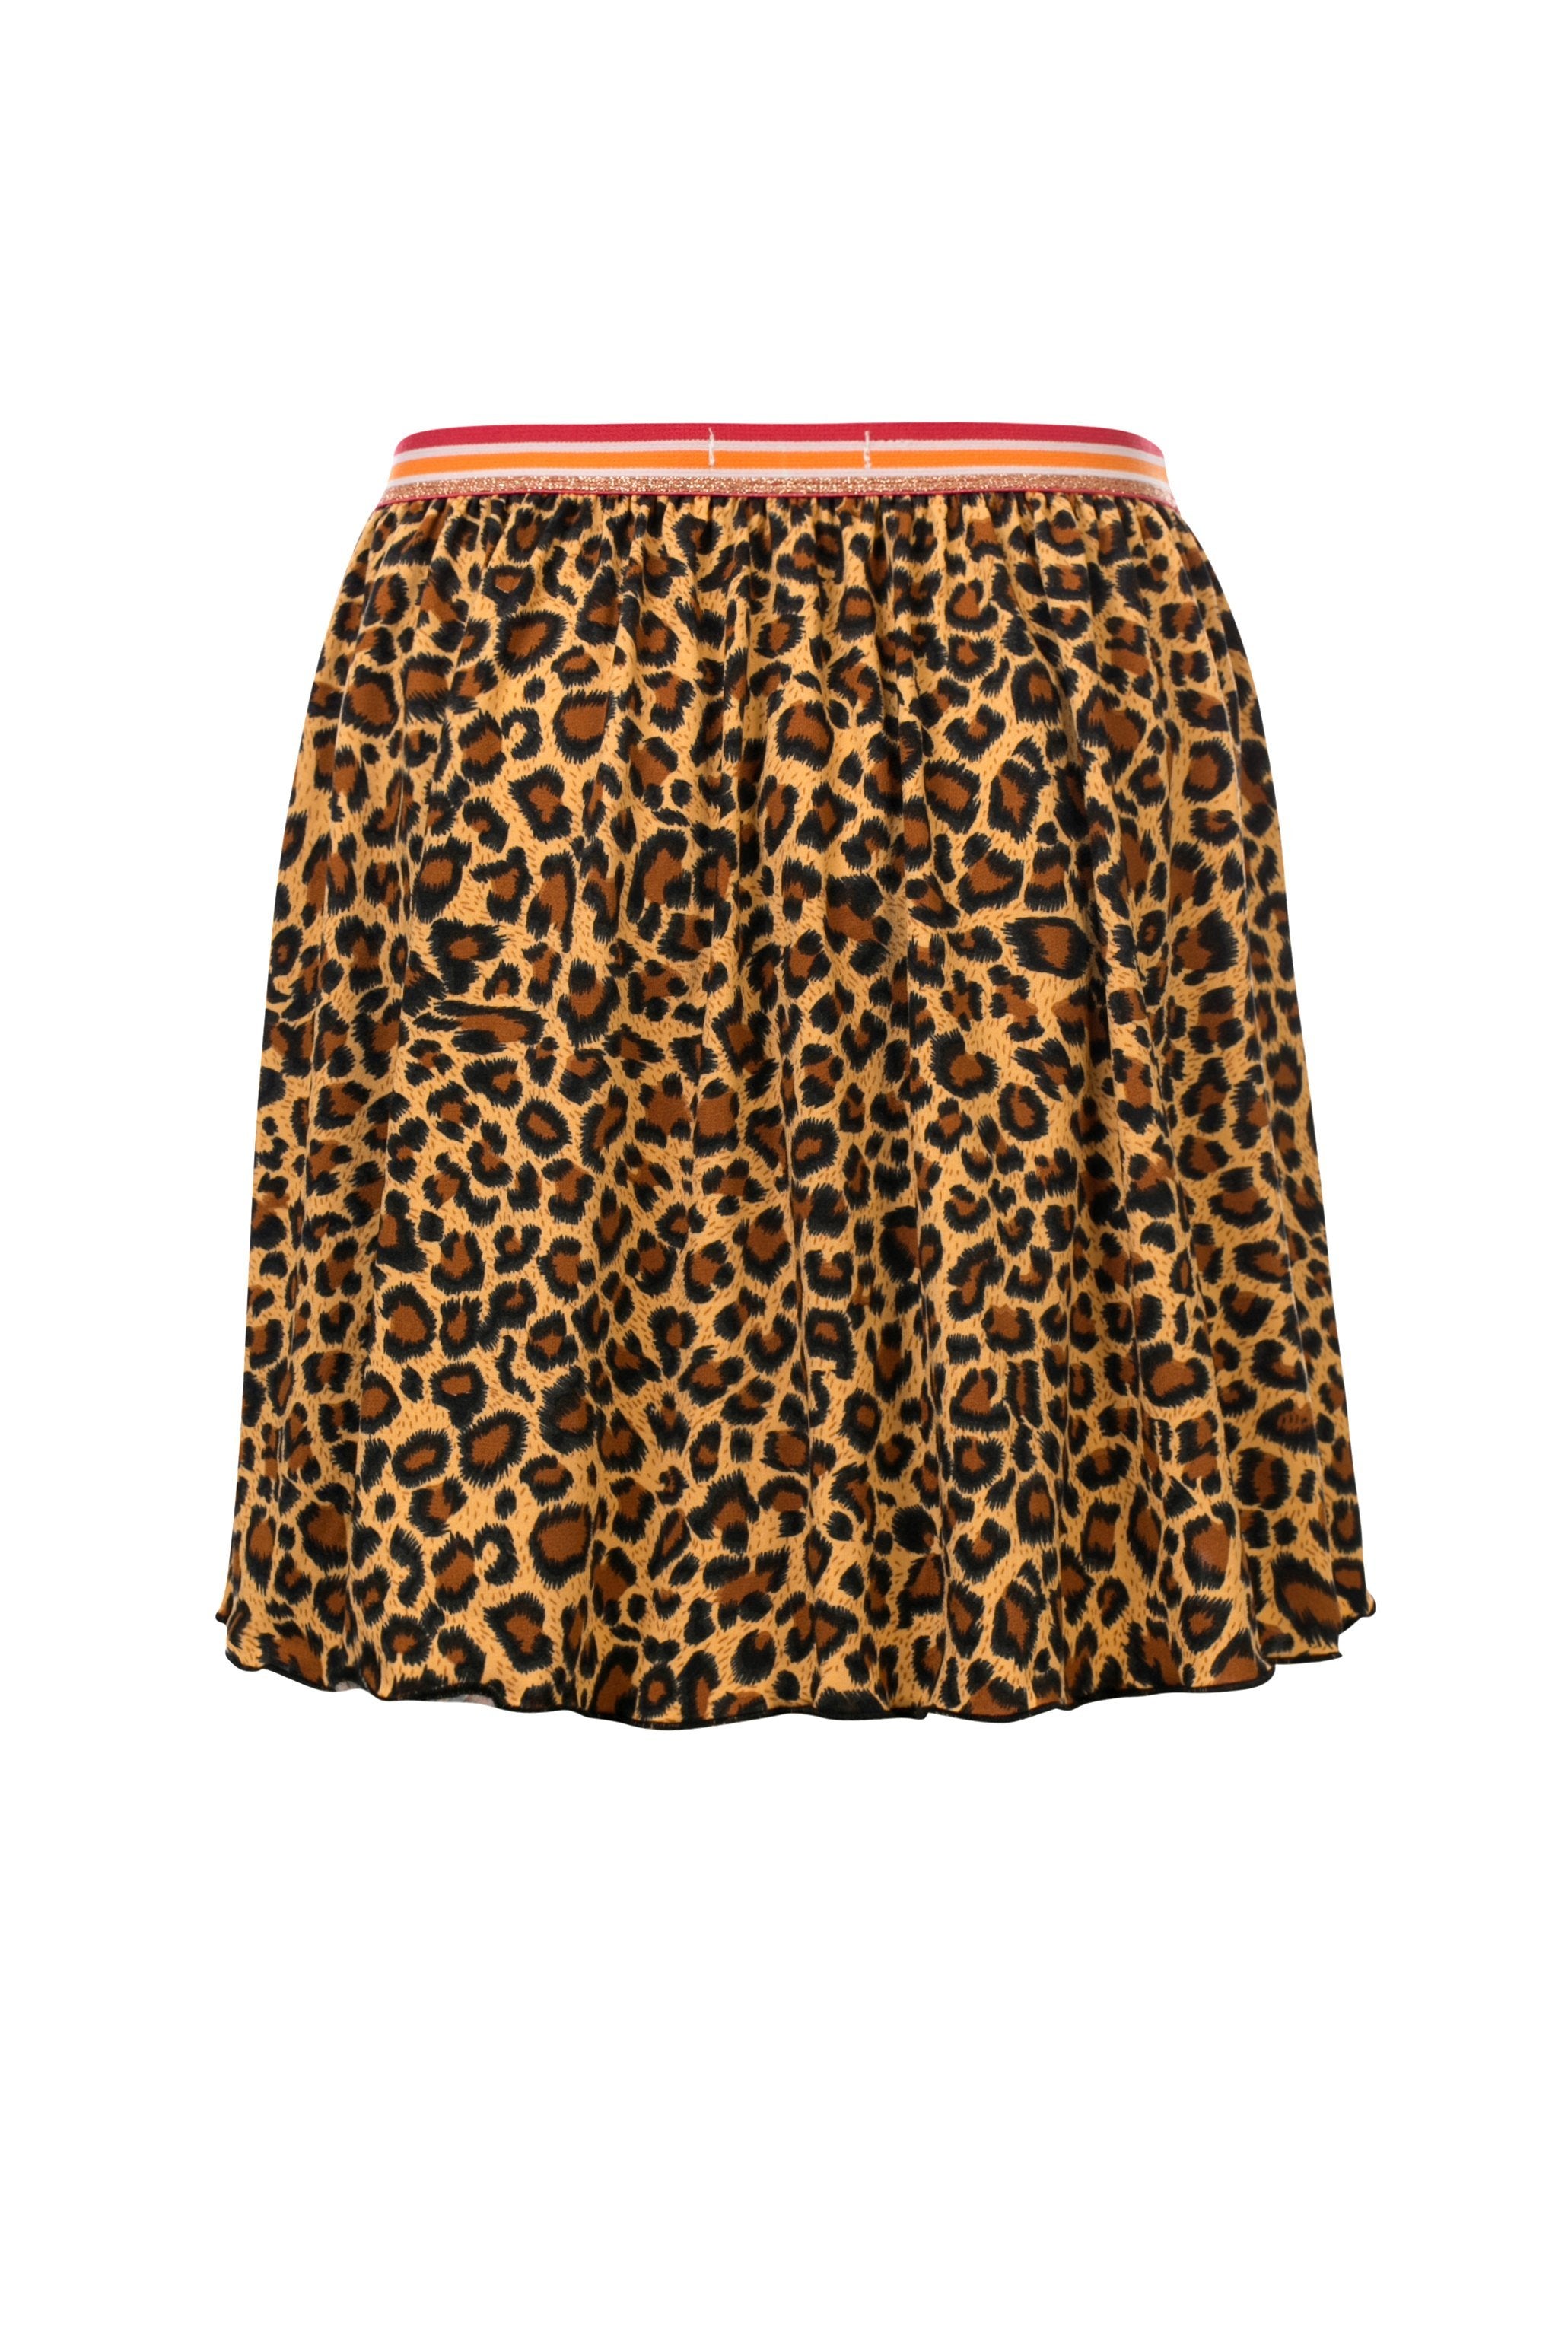 Meisjes Short Skirt van Little Looxs in de kleur Cheeta in maat 128.